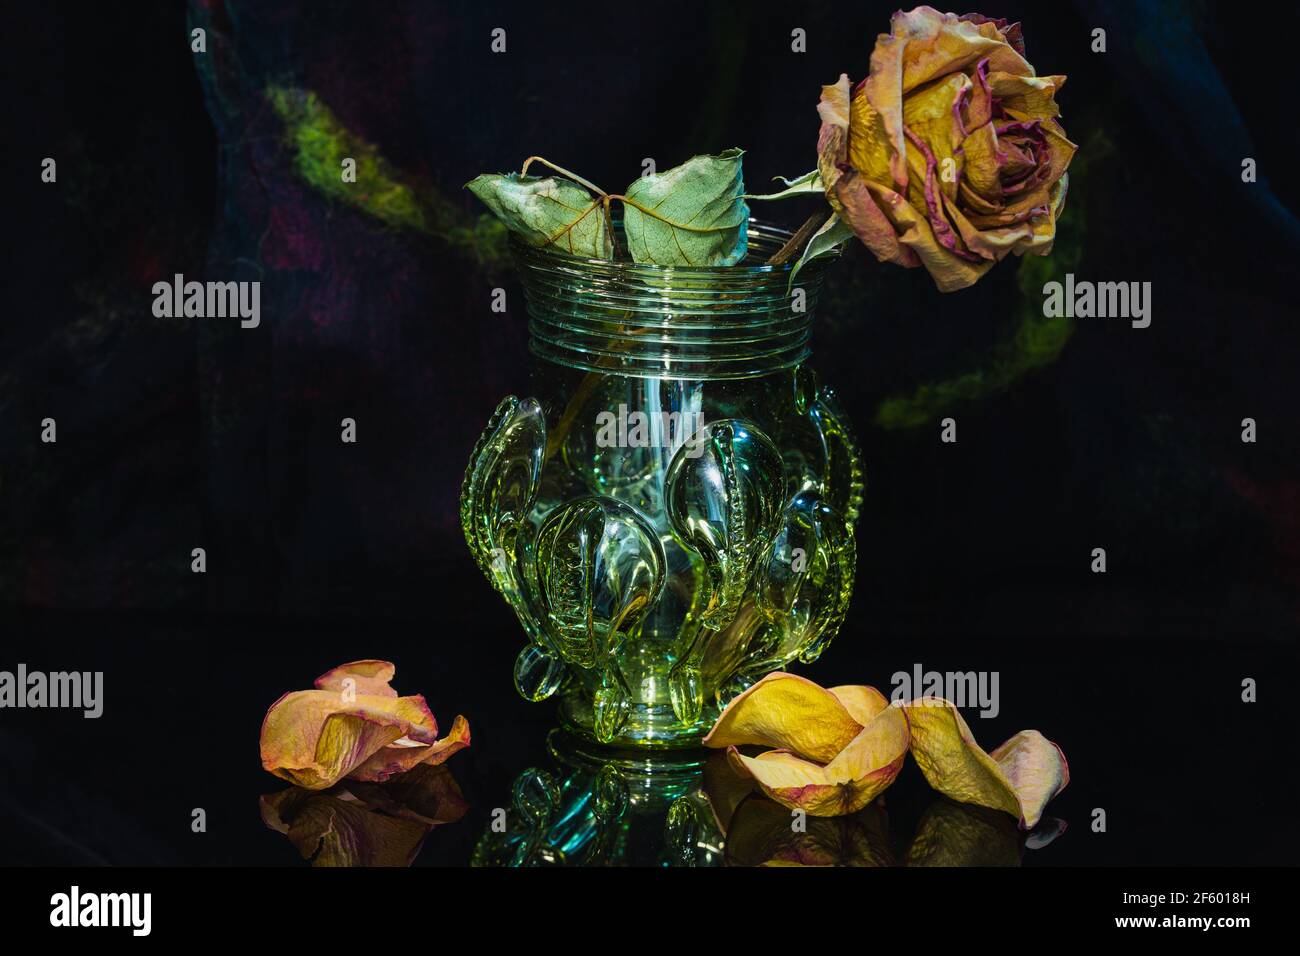 rose,dry rose, close up view, still life, wilted flower, detail shot, Nahaufnahme, Detailaufnahme, historische Vase, Vergänglichkeit, transience, Stock Photo